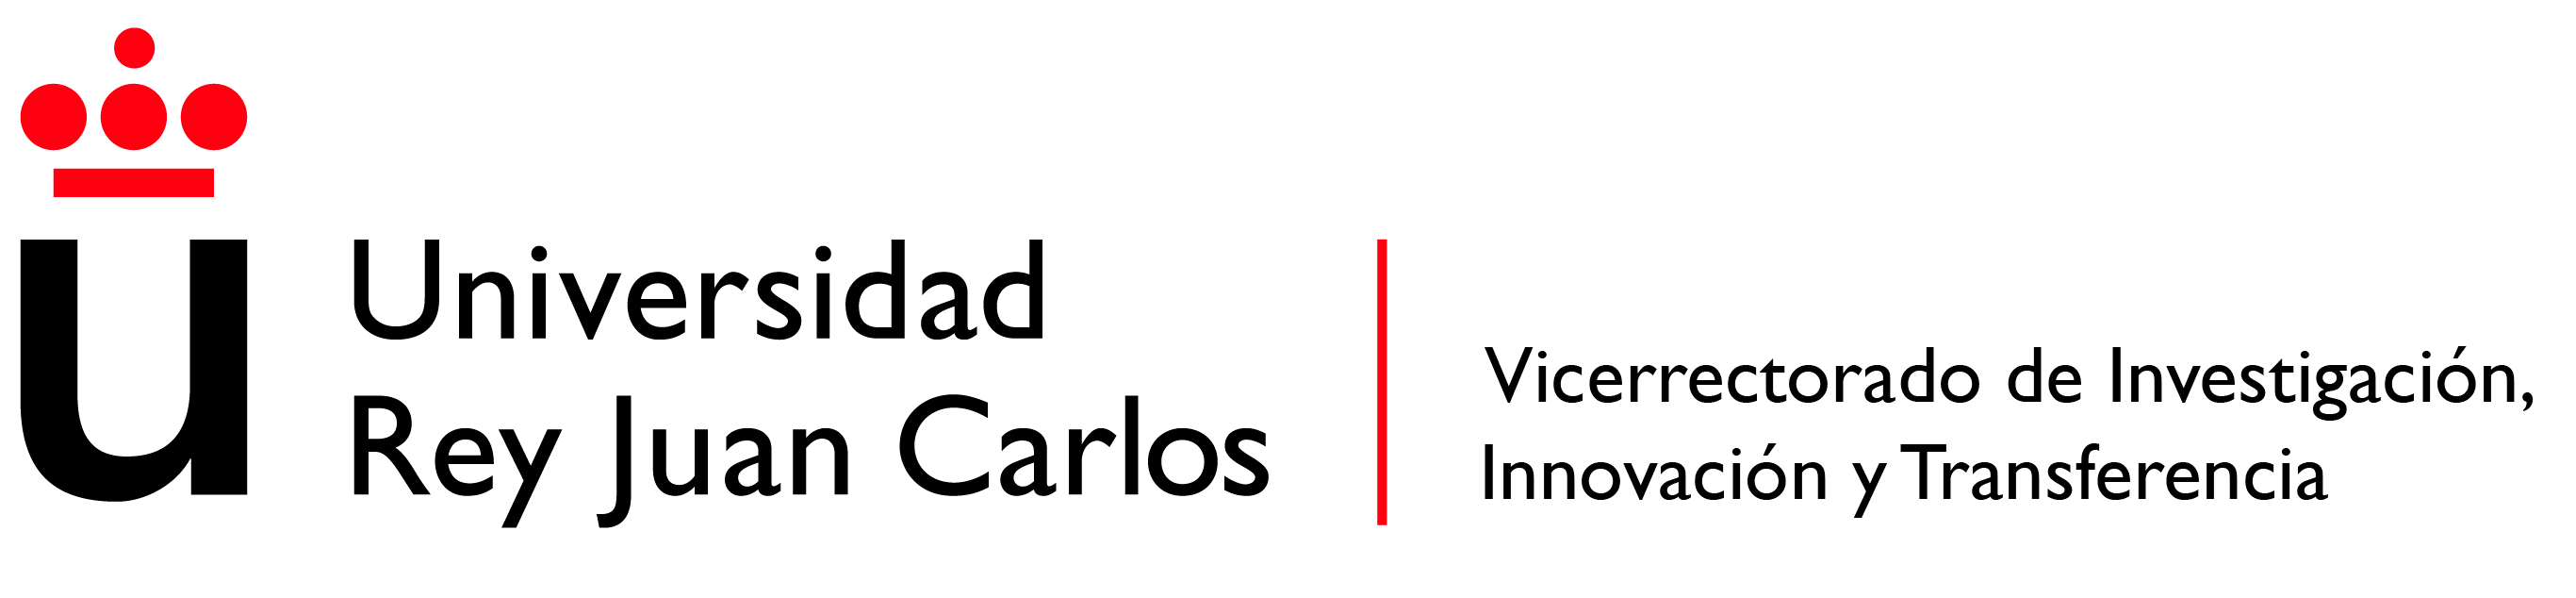 vice chancellor logo